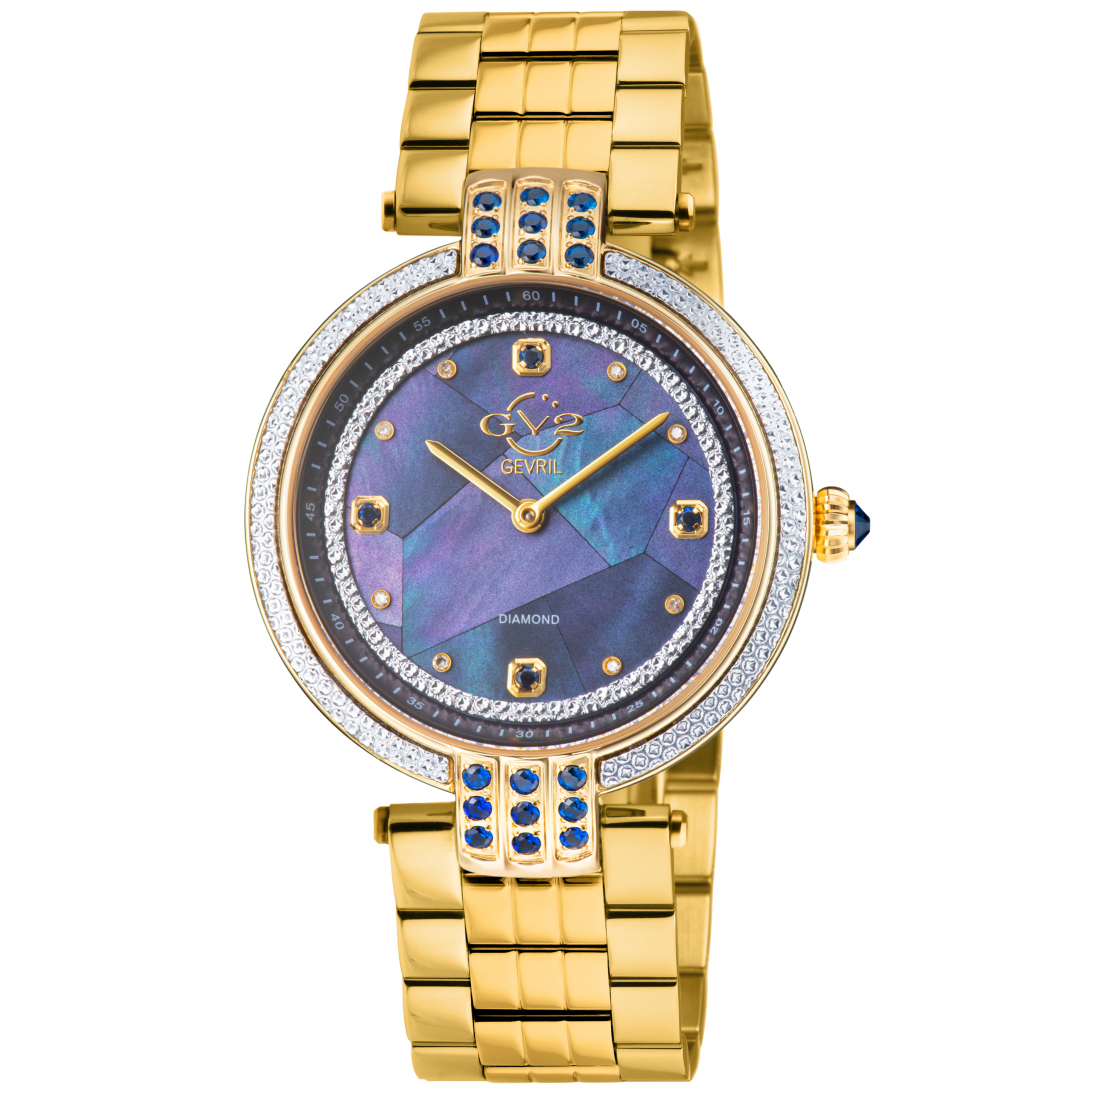 GV2 Matera Montre pour femme à quartz suisse cadran nacre bleu, bracelet IPYG en acier inoxydable 316L